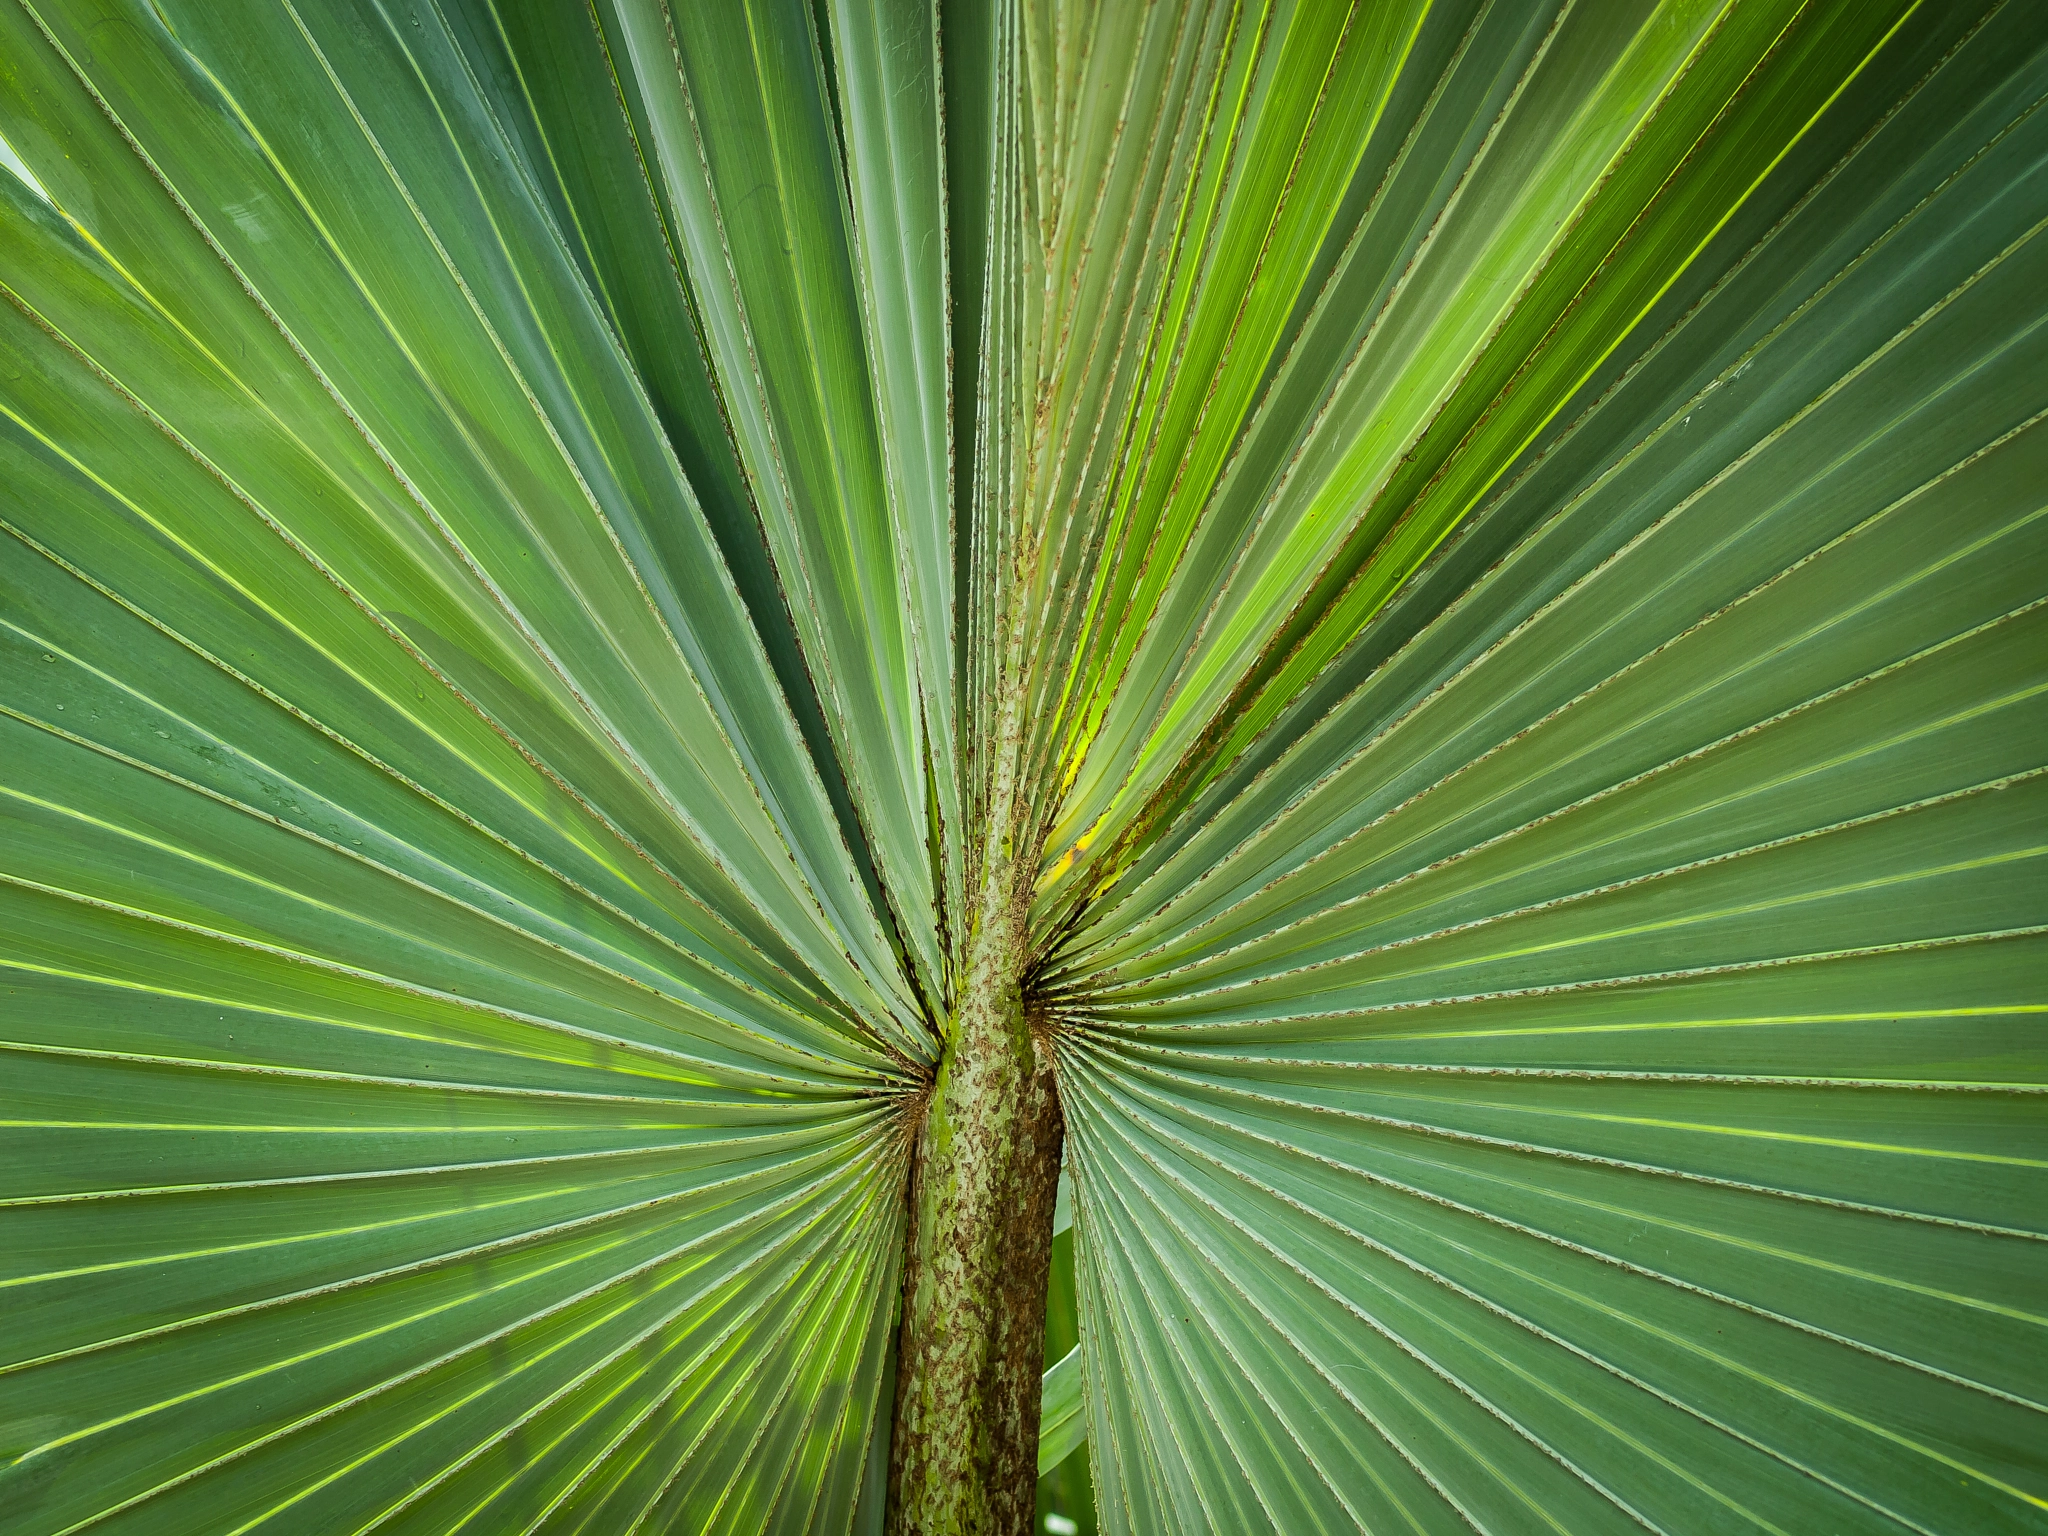 Olympus E-620 (EVOLT E-620) sample photo. Fan palm leaf photography